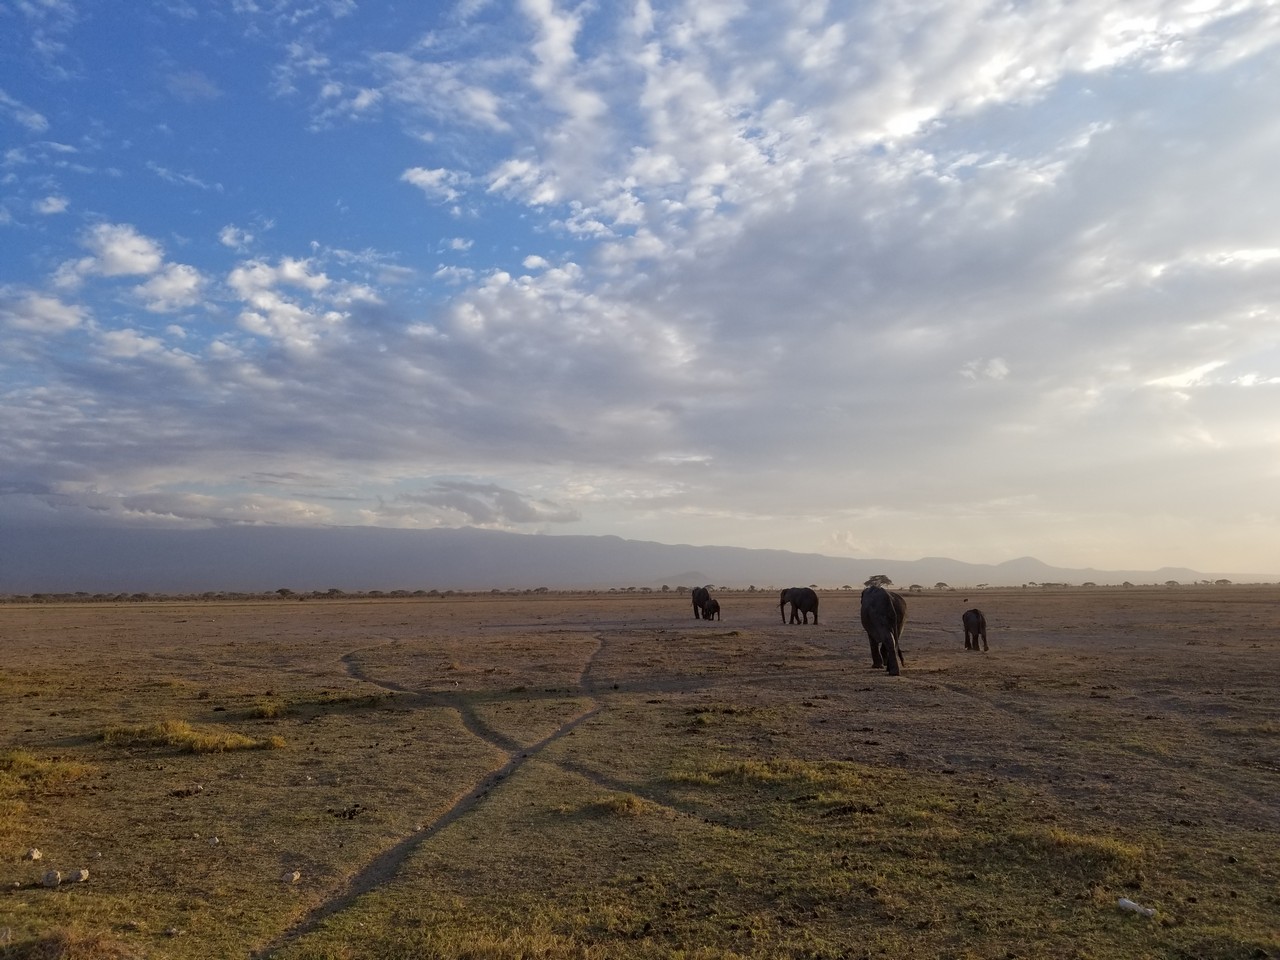 a group of elephants walking in a field